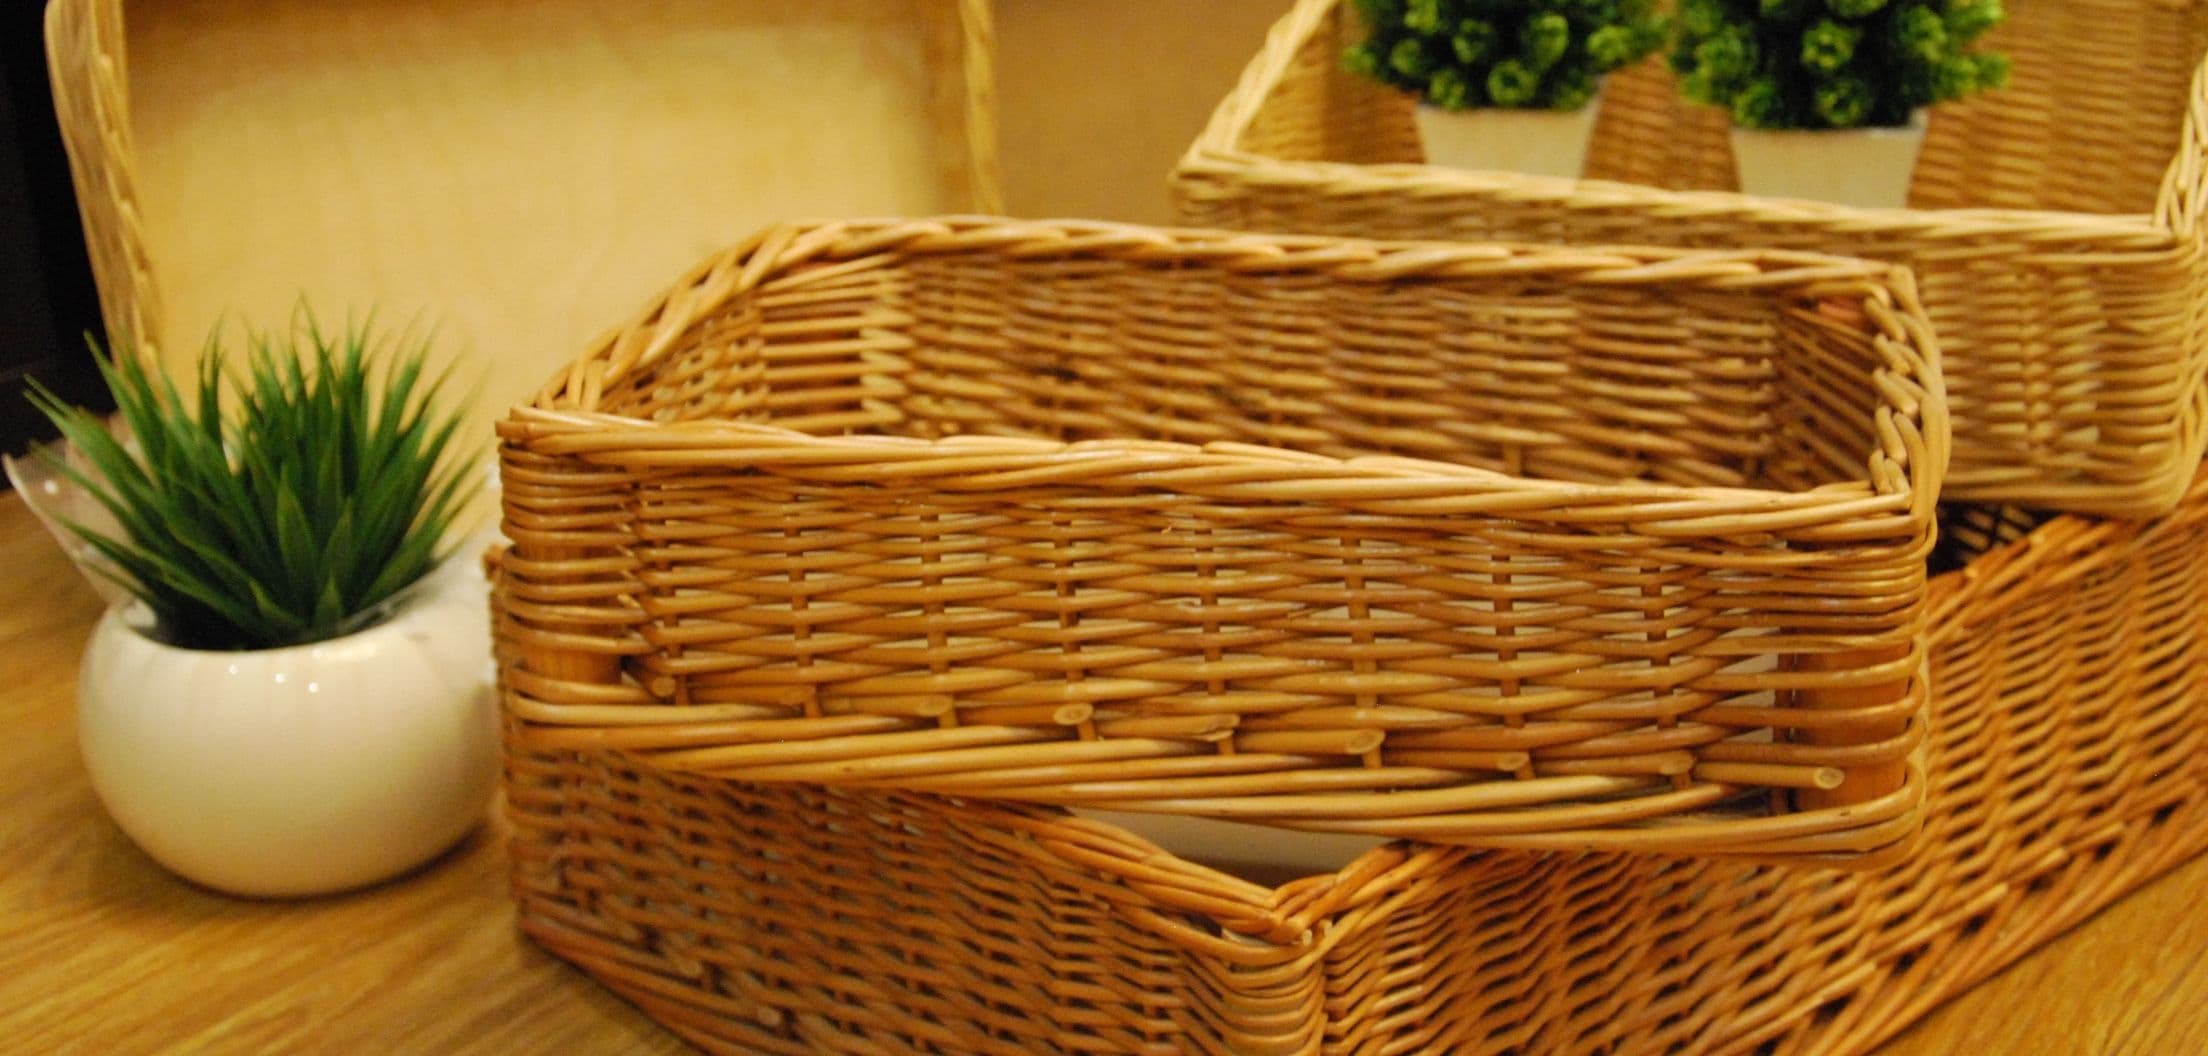 Плетеные корзины из натуральной лозы, ротанга в Москве | Купить корзины оптом от производителя